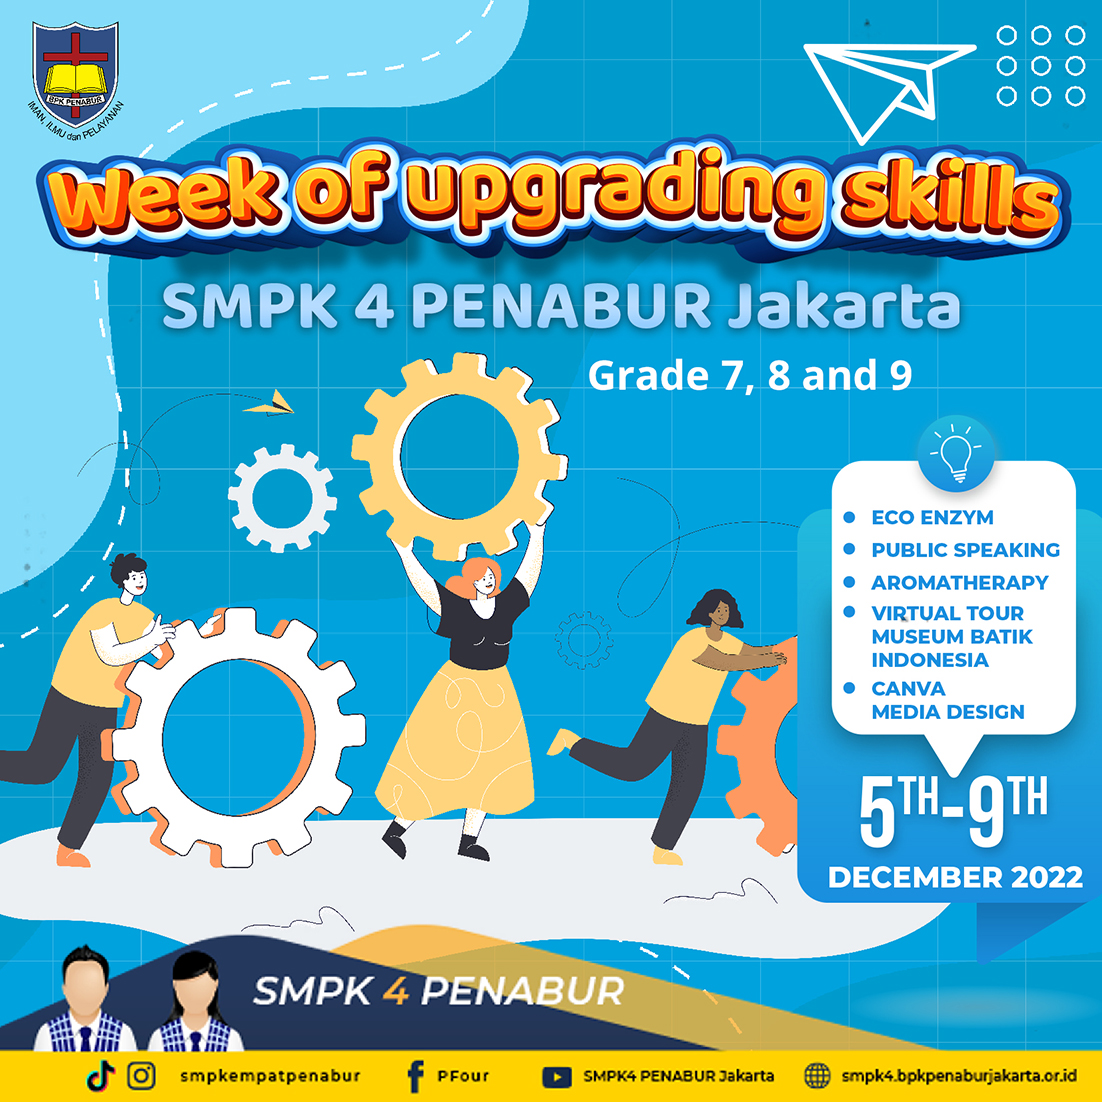 Webinar "Week of Upgrading Skills"